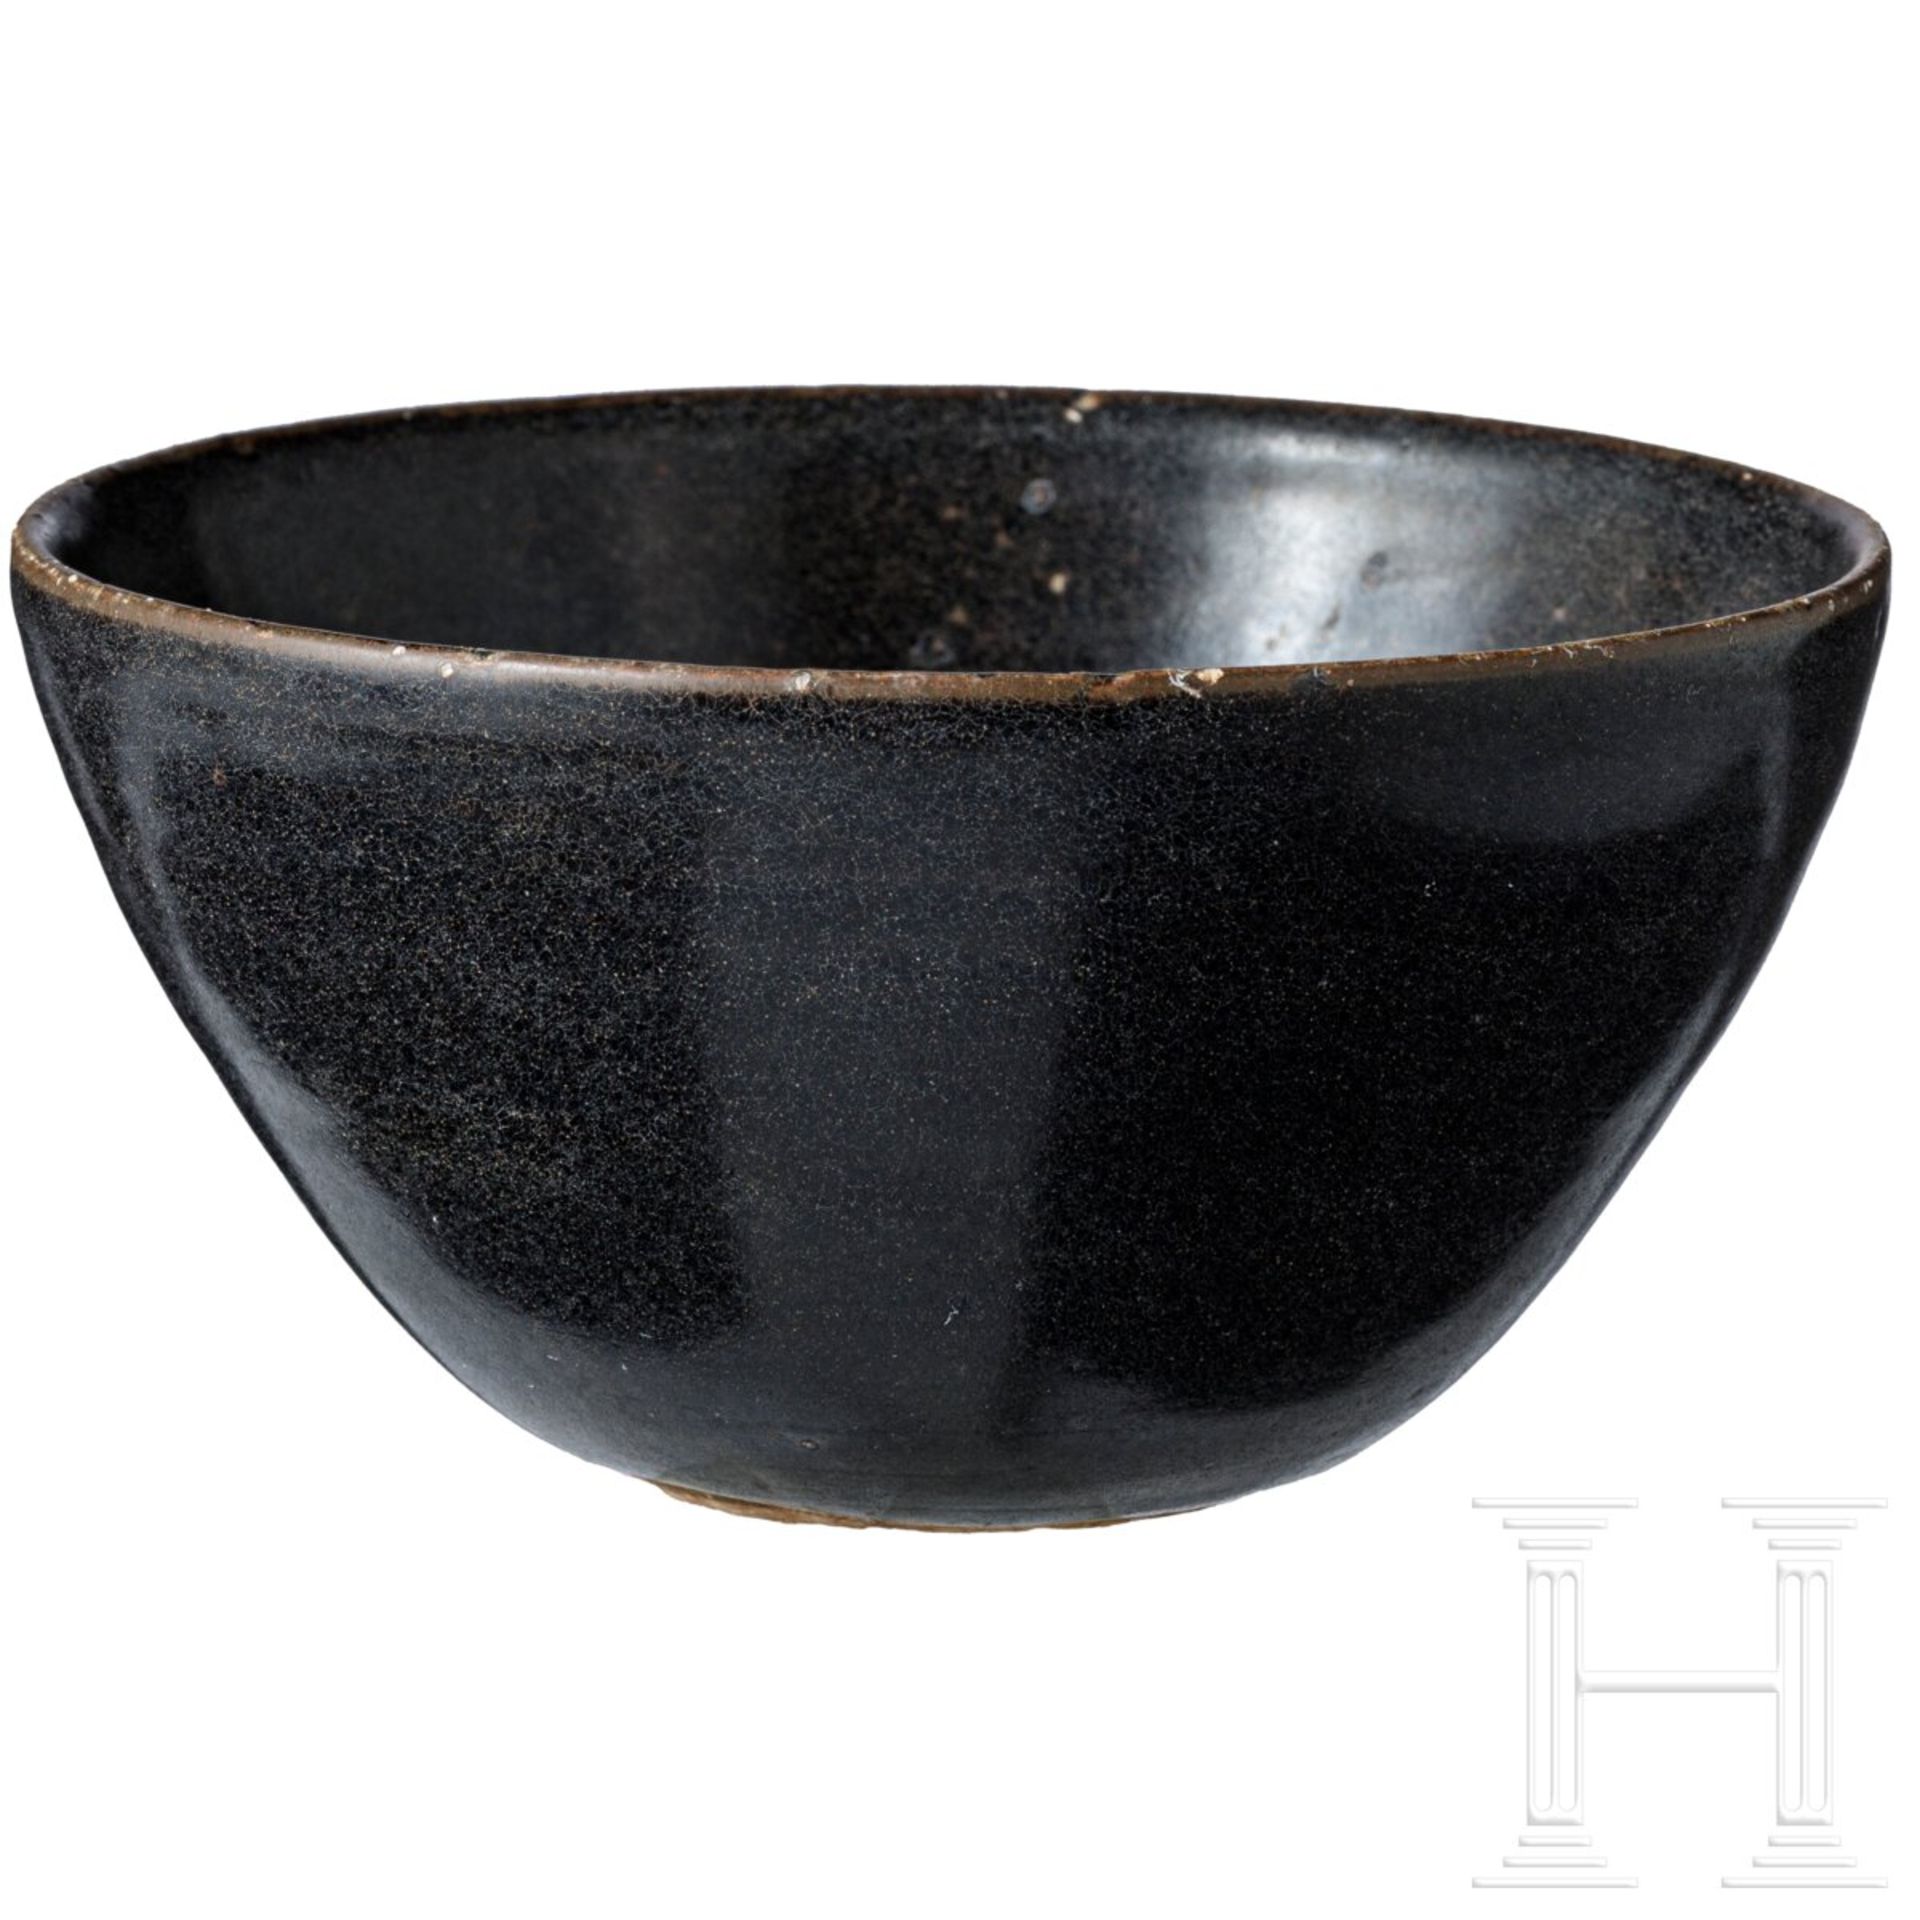 Jizhou-Teeschale, schwarz glasiert, wohl südliche Song-Dynastie (12. - 13. Jhdt.) - Bild 4 aus 17